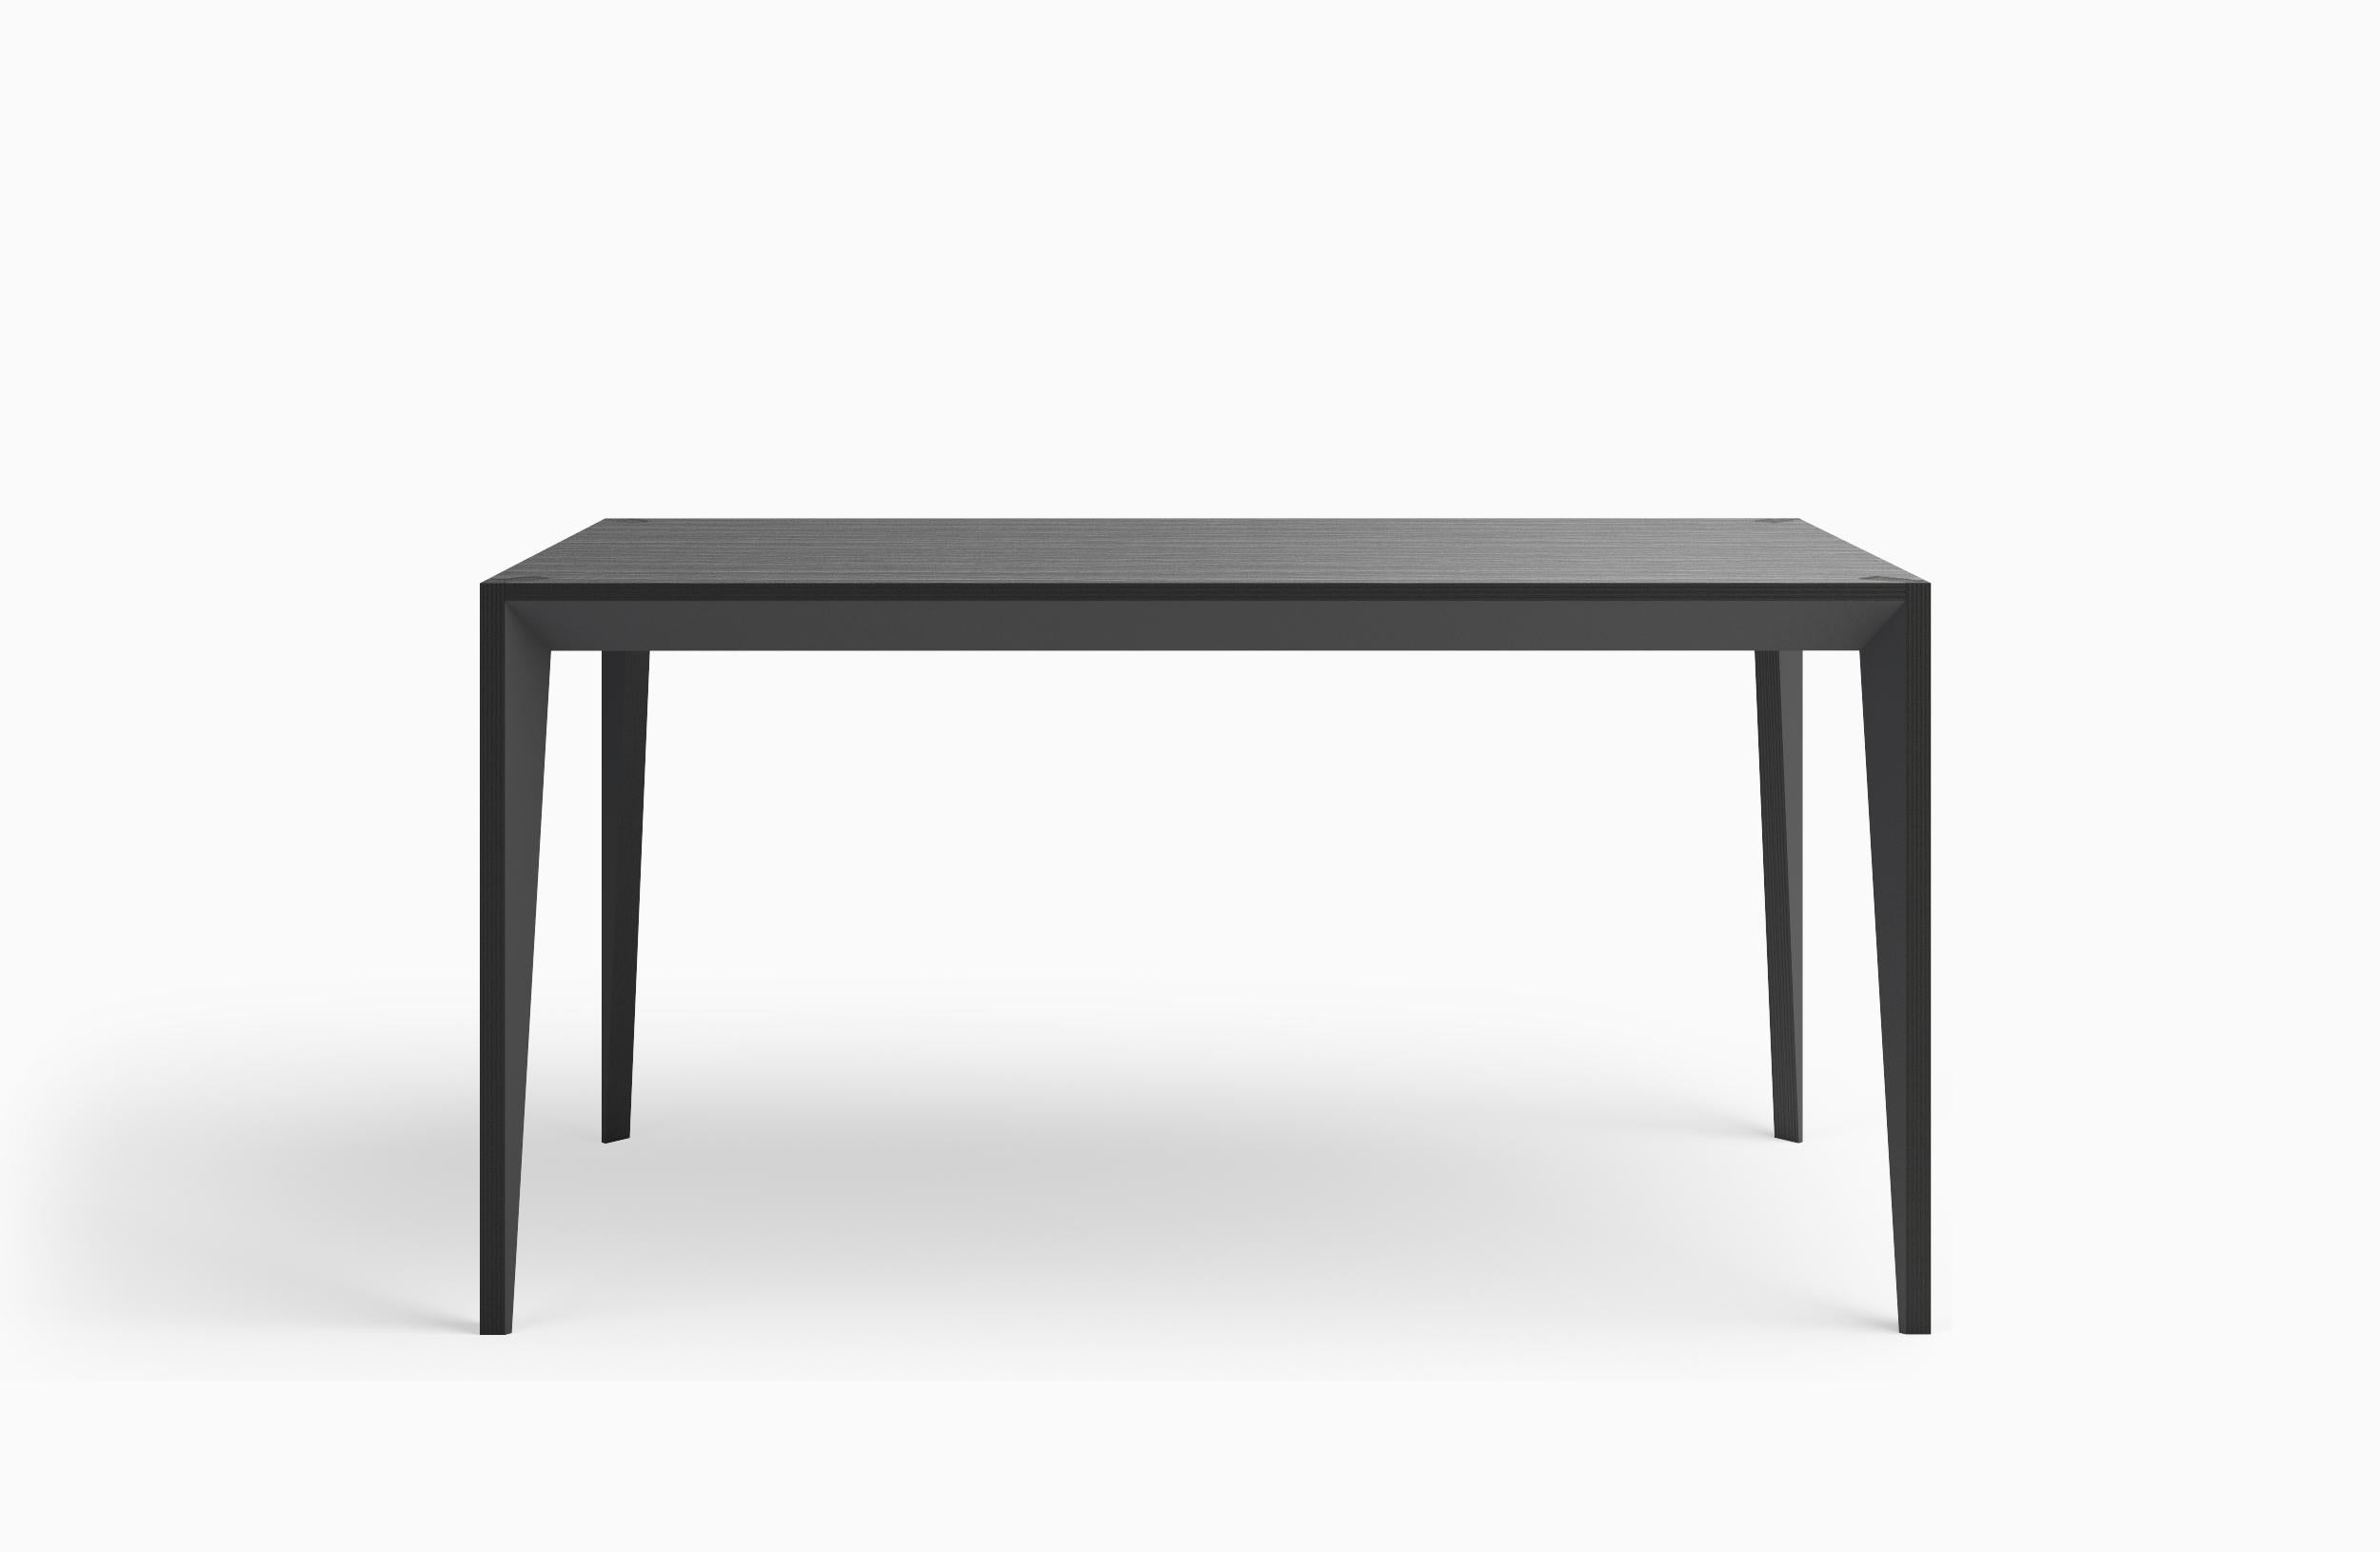 Die facettierte Geometrie des MiMi-Tisches erzeugt ein schlankes, elegantes Profil und fängt das Licht je nach Ausrichtung unterschiedlich ein. Dieses moderne und anmutige Design bringt zeitgenössische italienische Handwerkskunst auf den